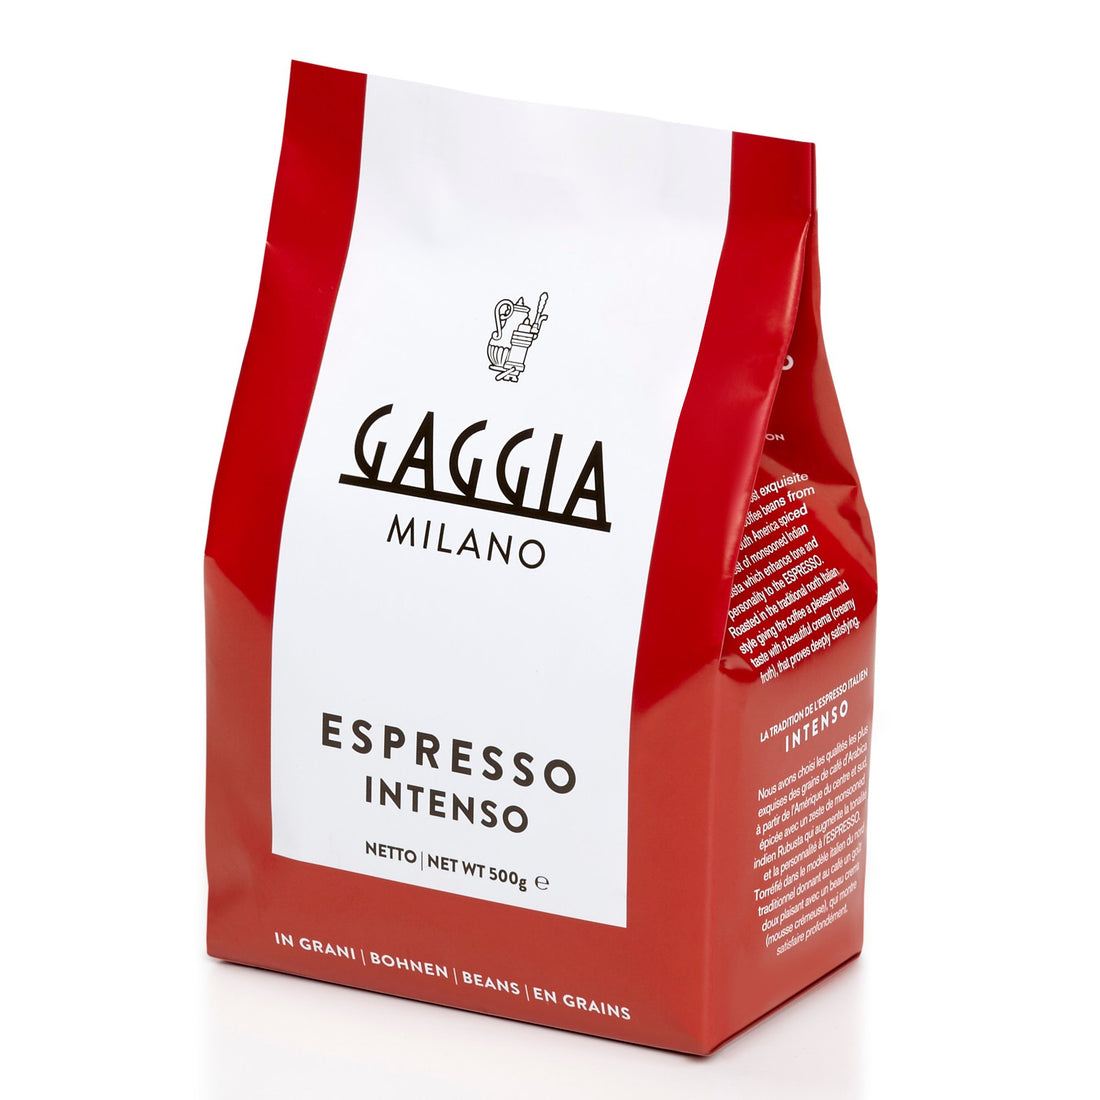 Gaggia Intenso Whole Bean Espresso - 1.1 lb